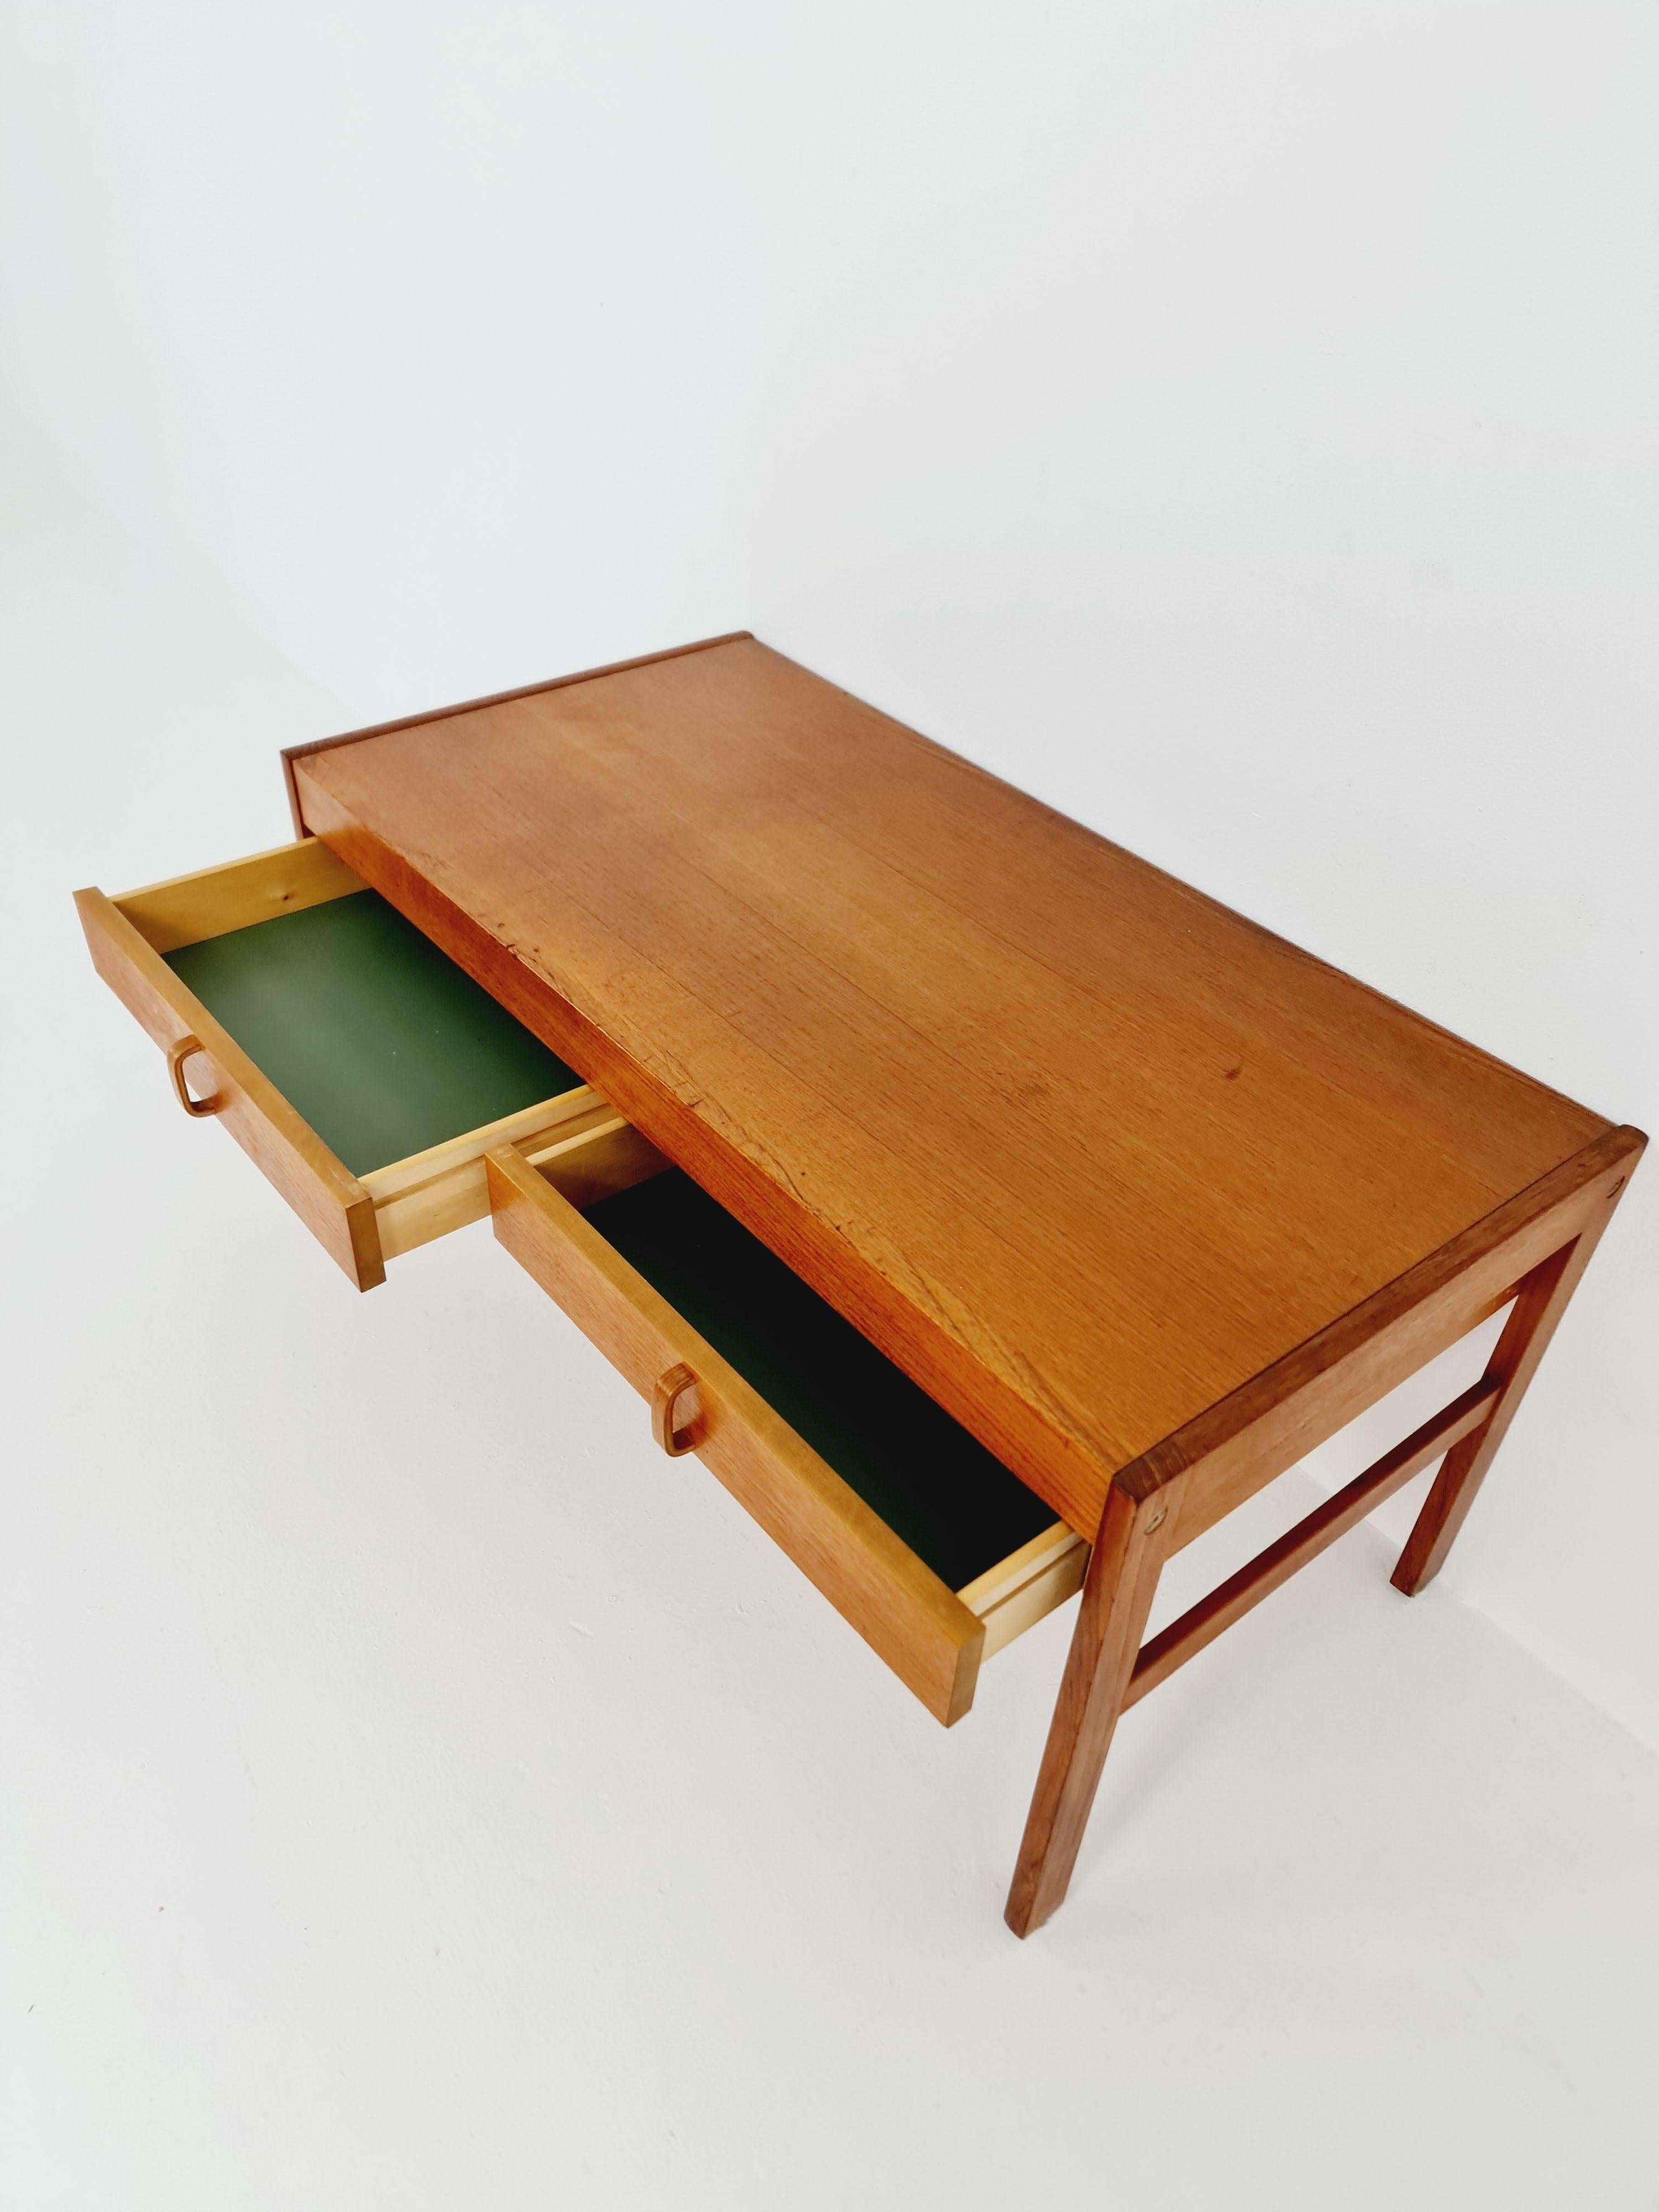 Table d'appoint/ Table de chevet/ Table de nuit en teck danois vintage, 1960s

Utilisable comme table supplémentaire dans le salon

Année de conception : 1960s

Dimensions : 
46 D x 68 L x 47 H cm


Il est en très bon état. Cependant, comme pour